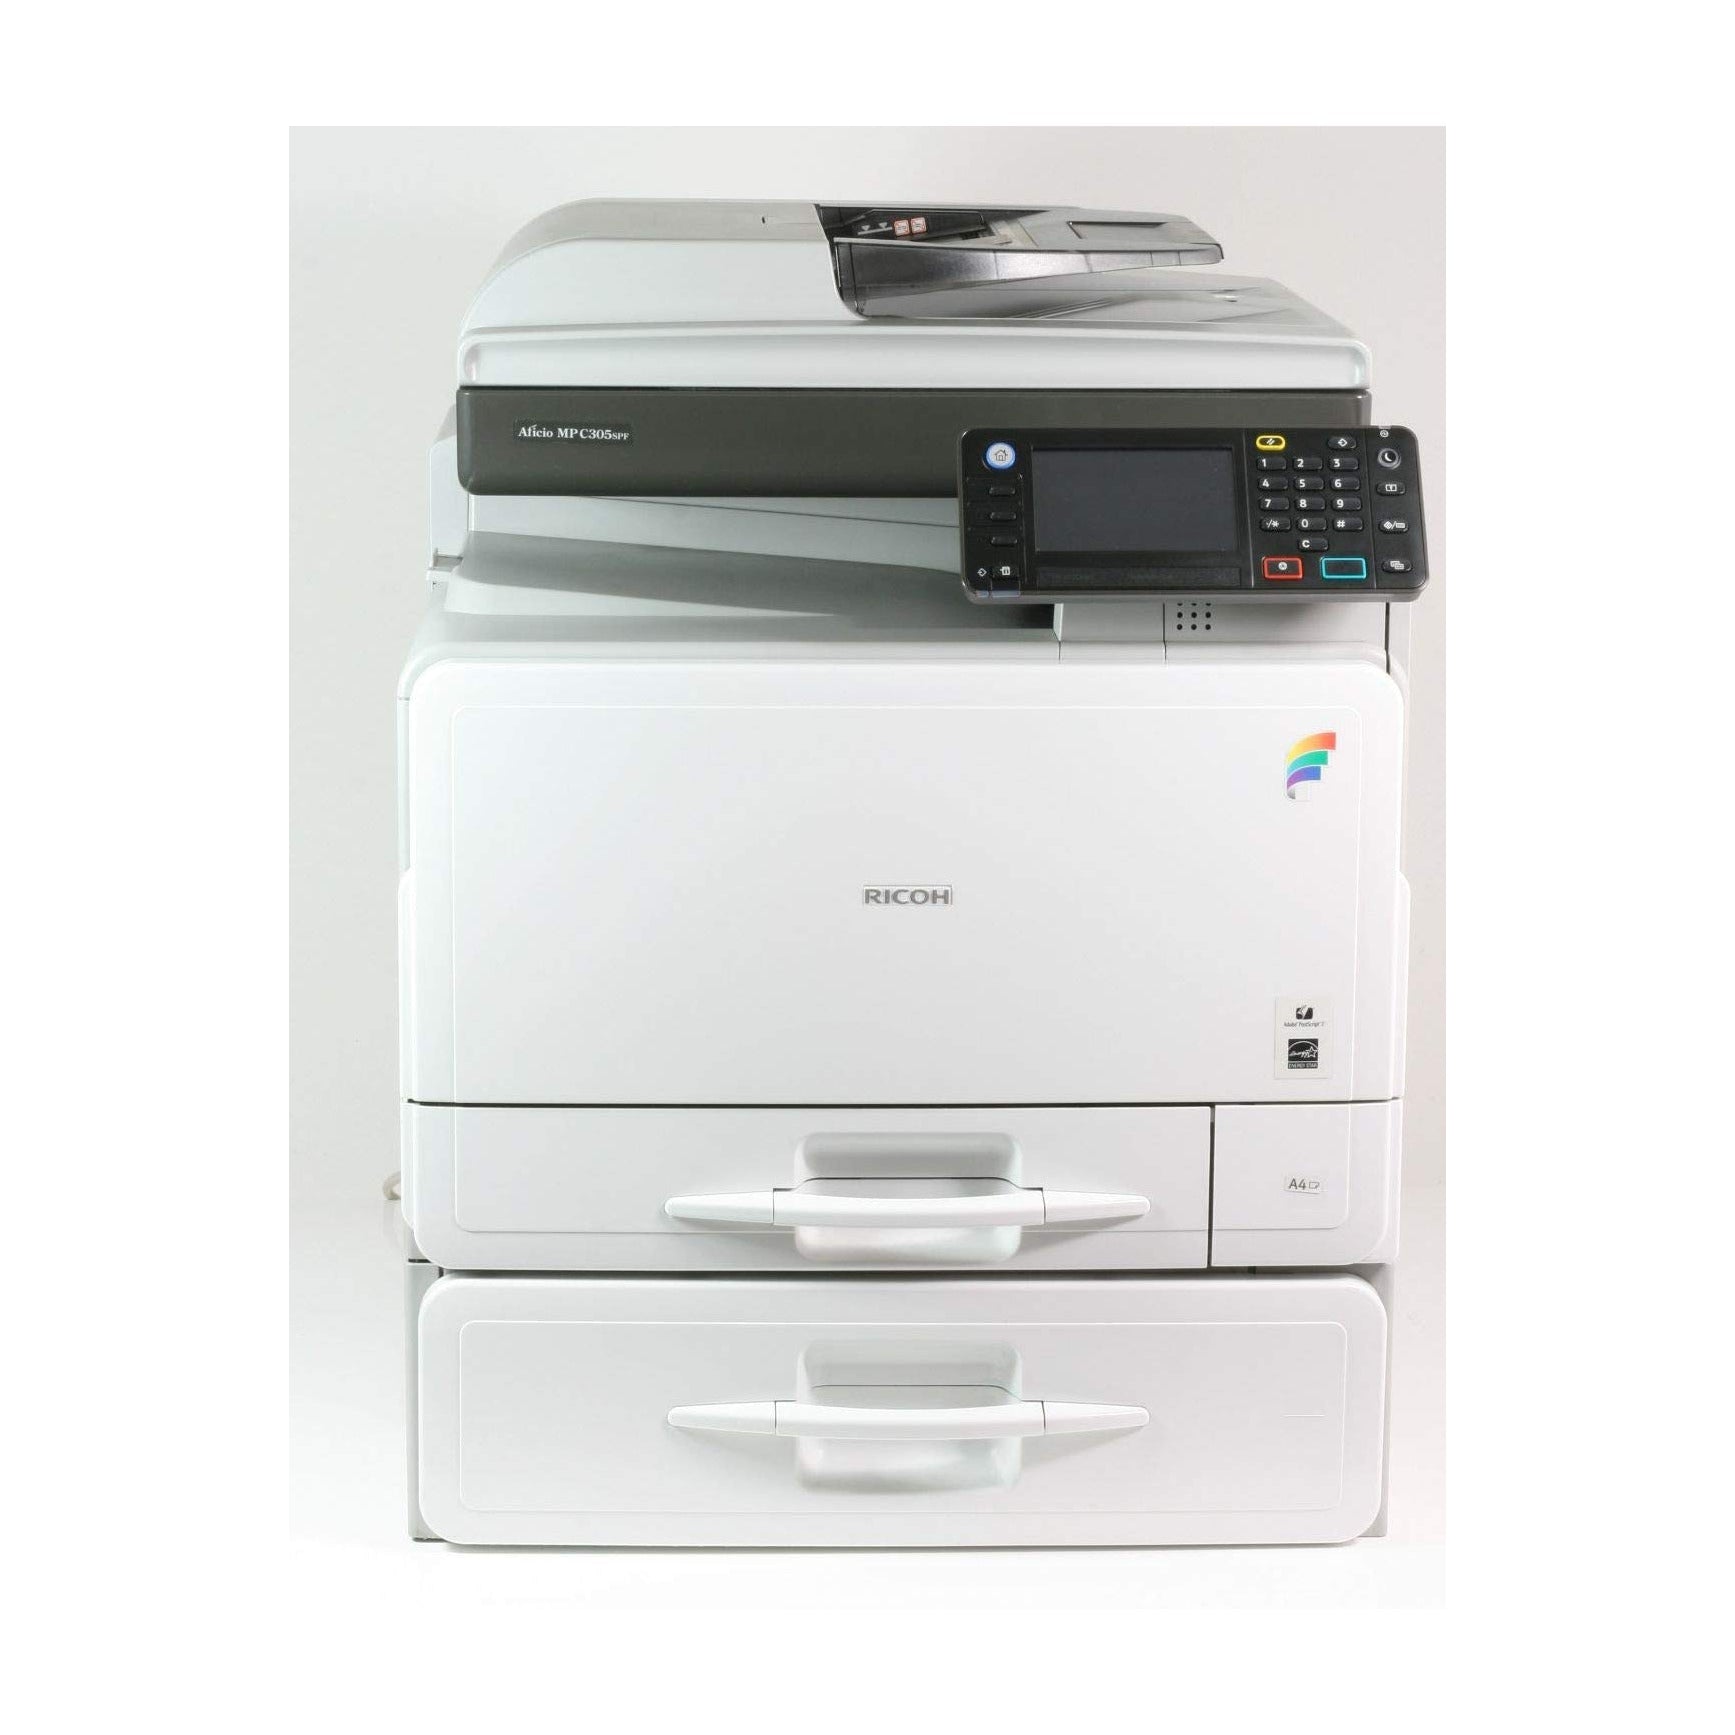 Ricoh MP C305SPF Color Laser Multifunction Desktop Printer ONLY 8K METER